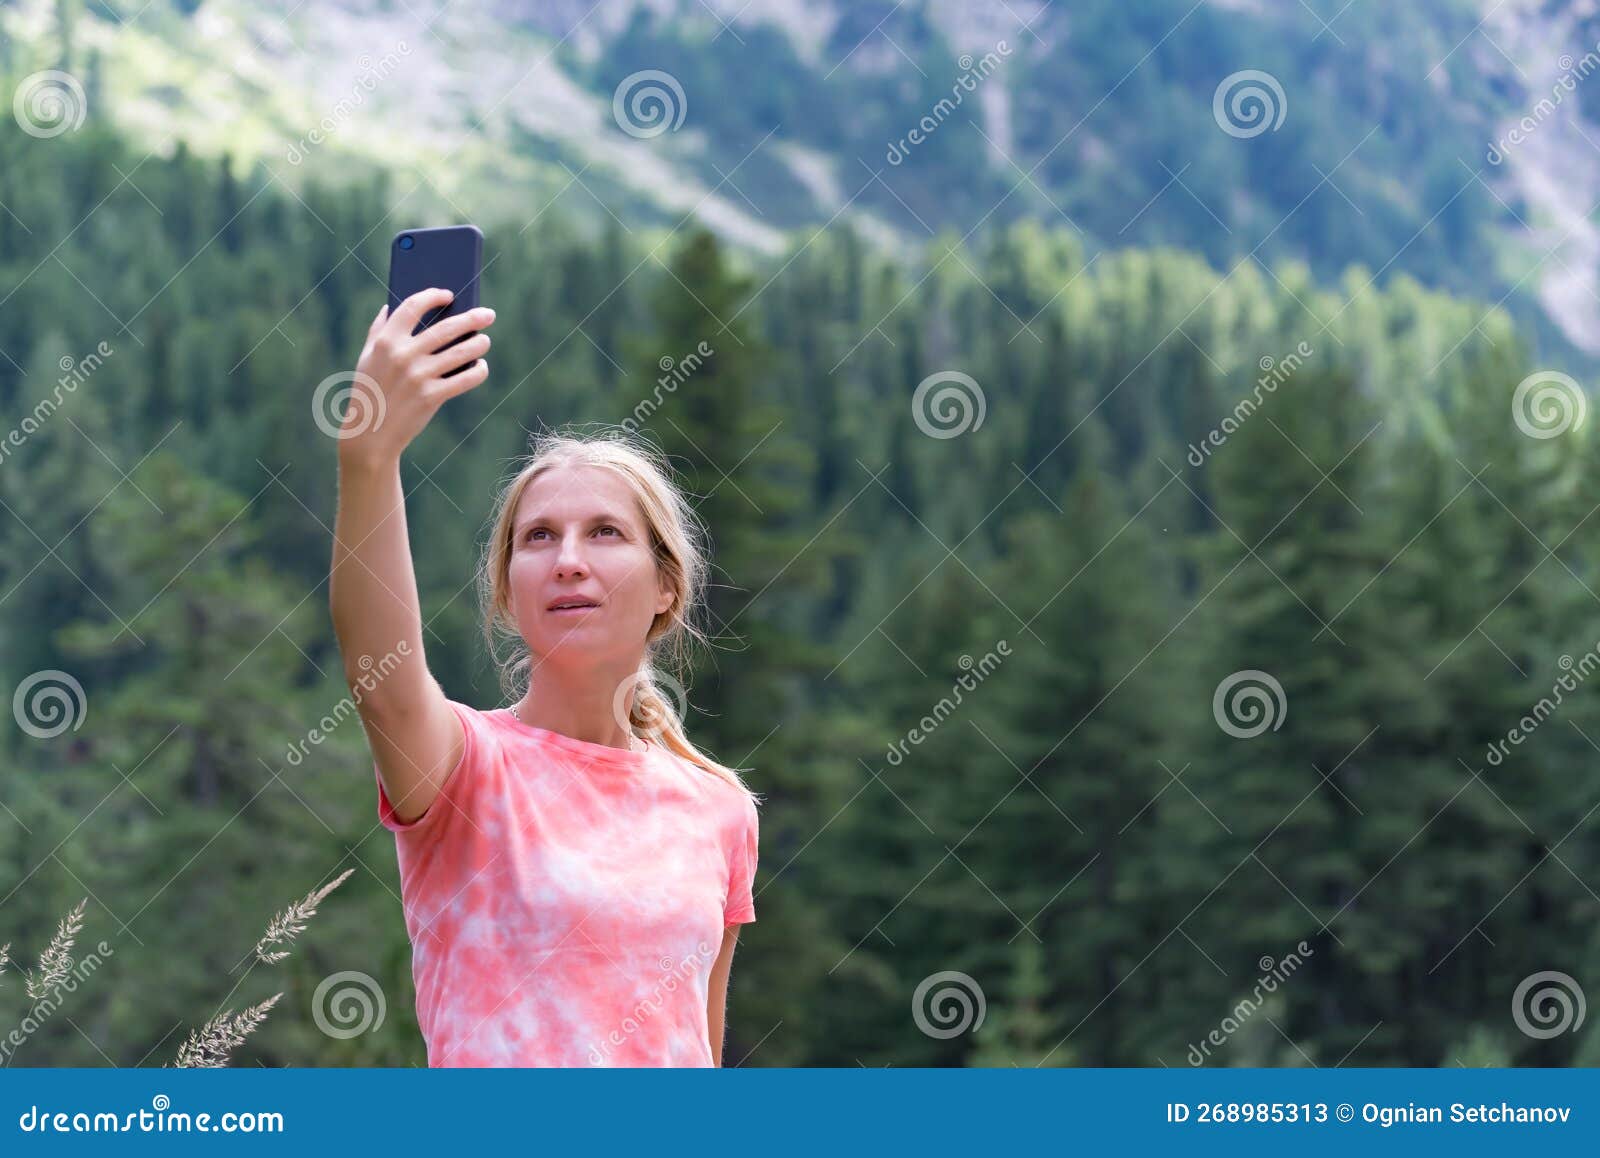 Blonde Selfie Girl - wide 9